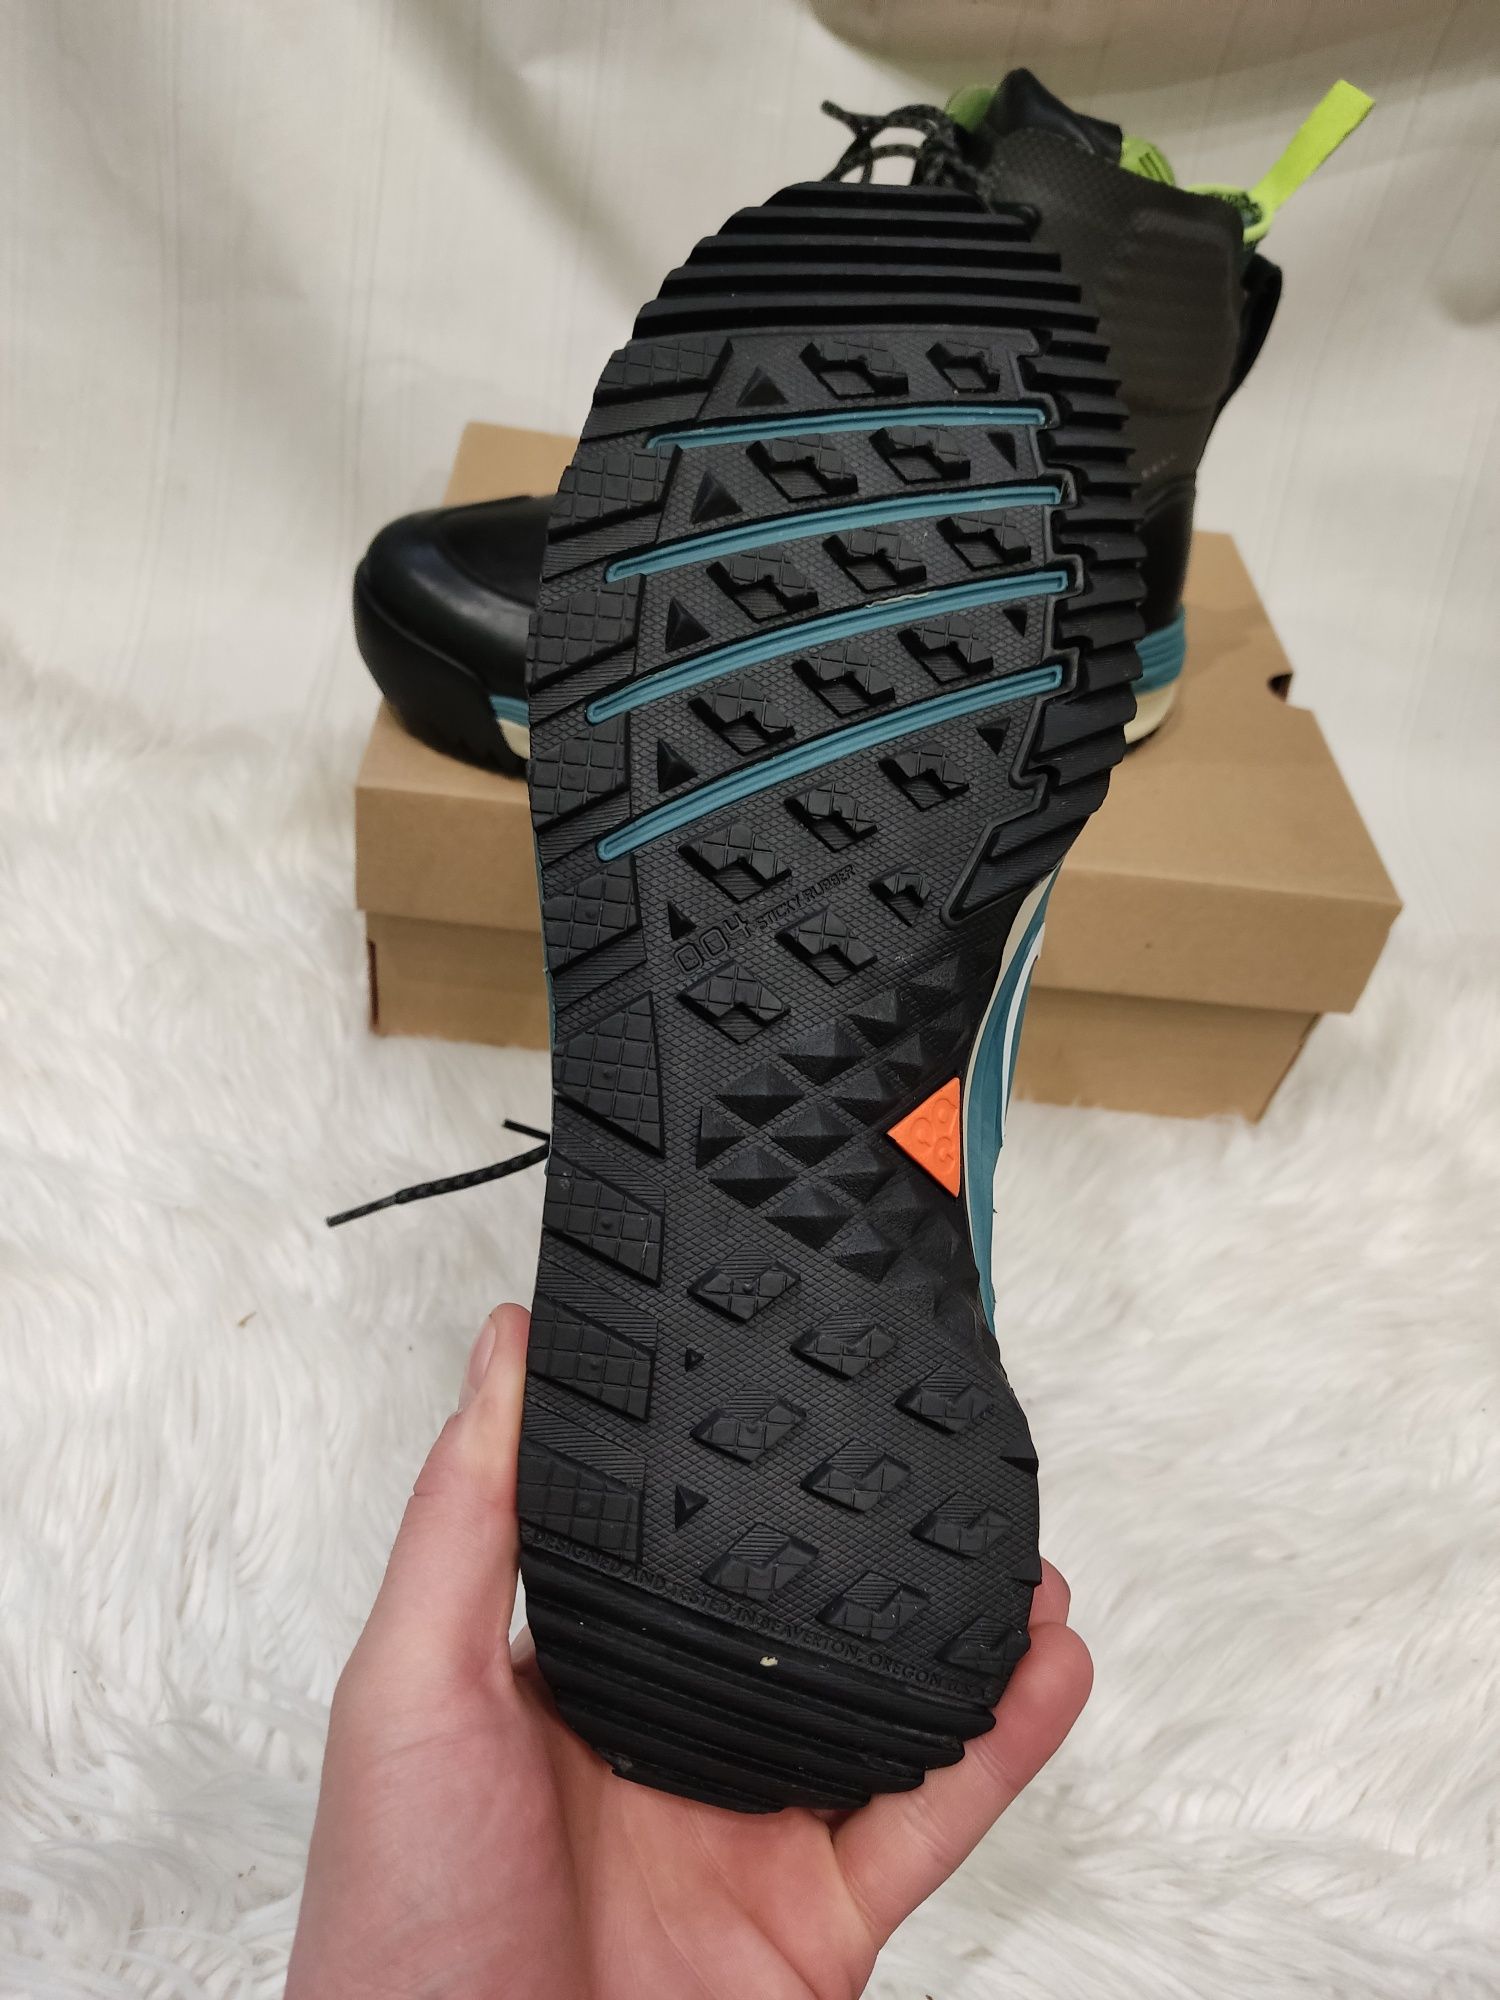 Трекінгові черевики Nike lunar terra Аpktoc 44 розмір  616179-003